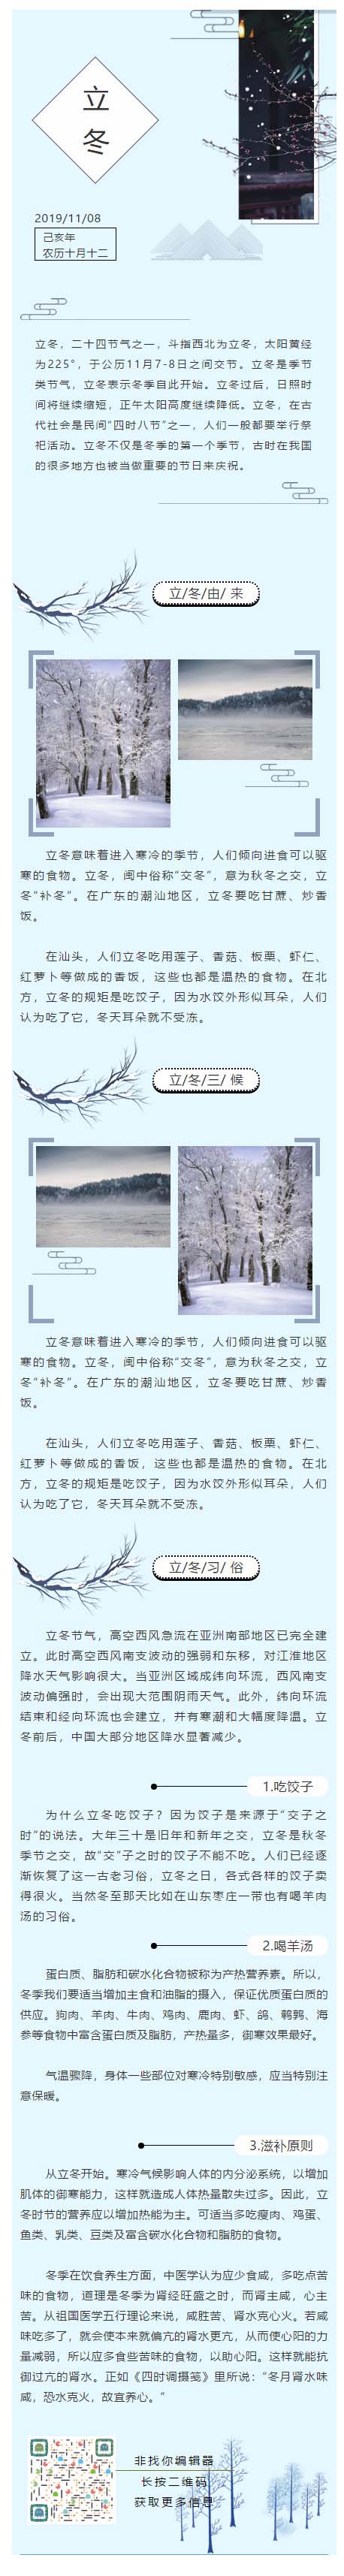 立冬二十四节气之一传统节日淡蓝色中国风公众号微信模板